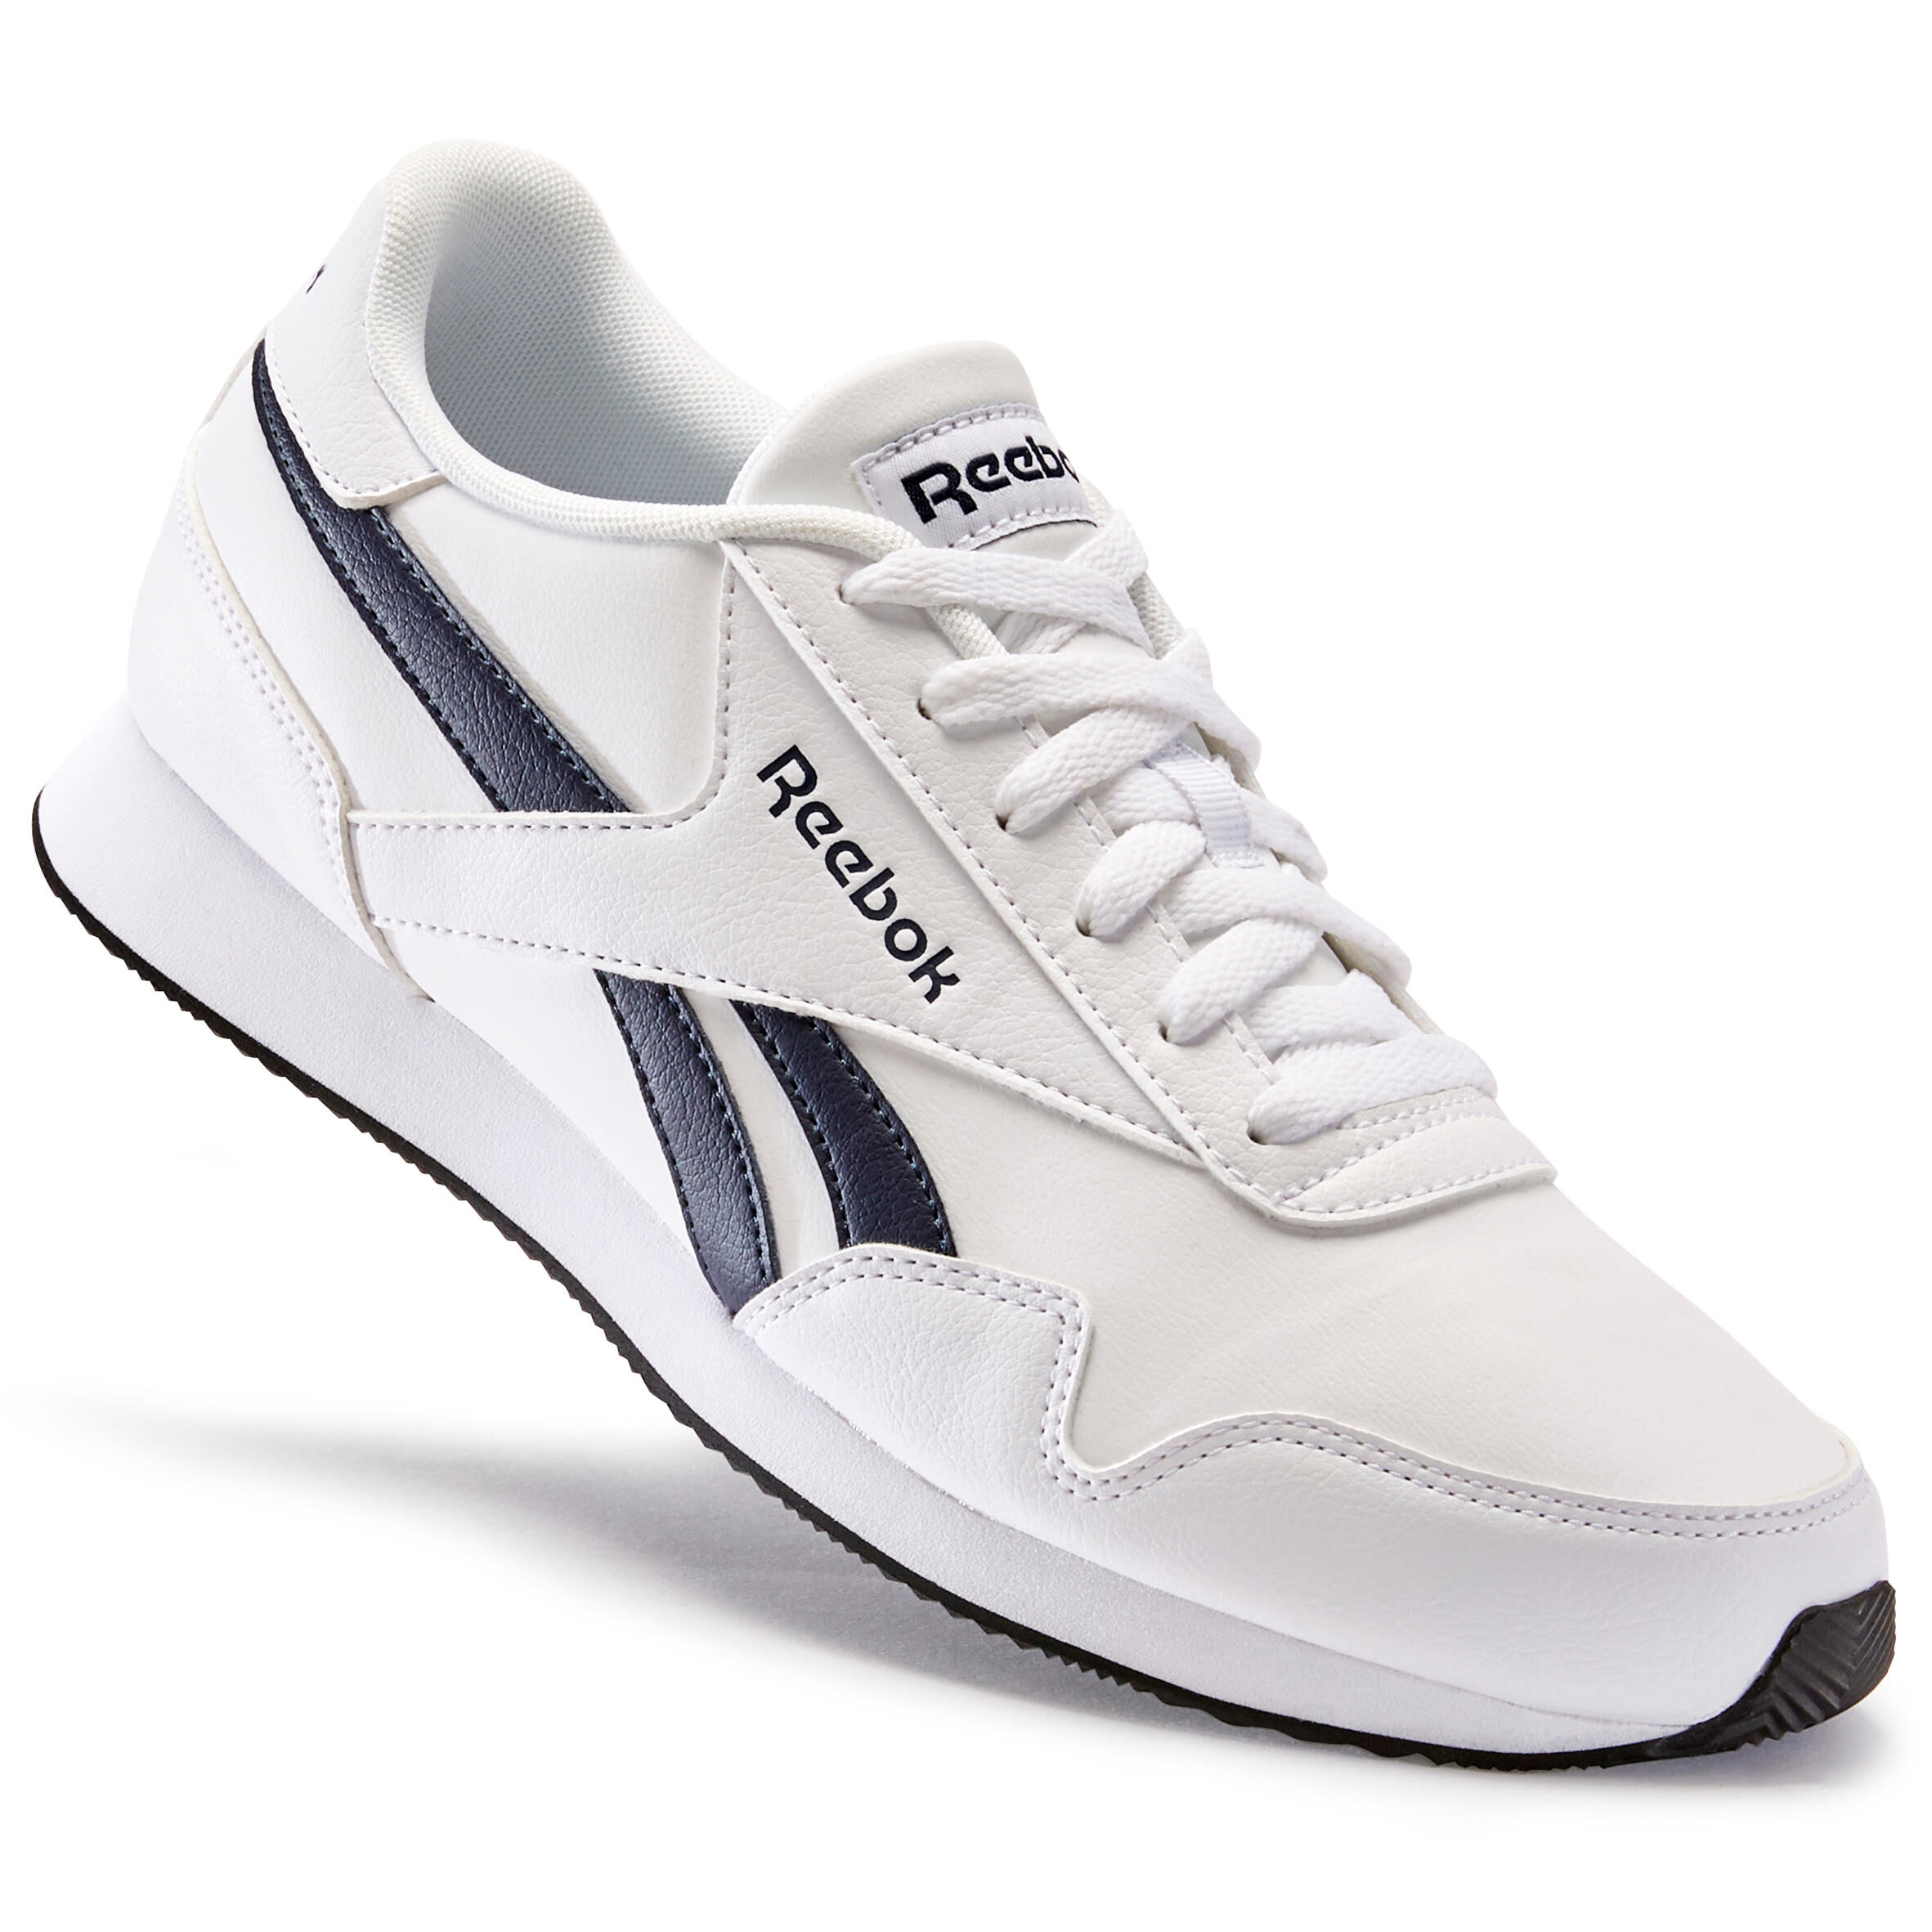 REEBOK Men's Urban Walking Shoes Reebok Royal Classic - white